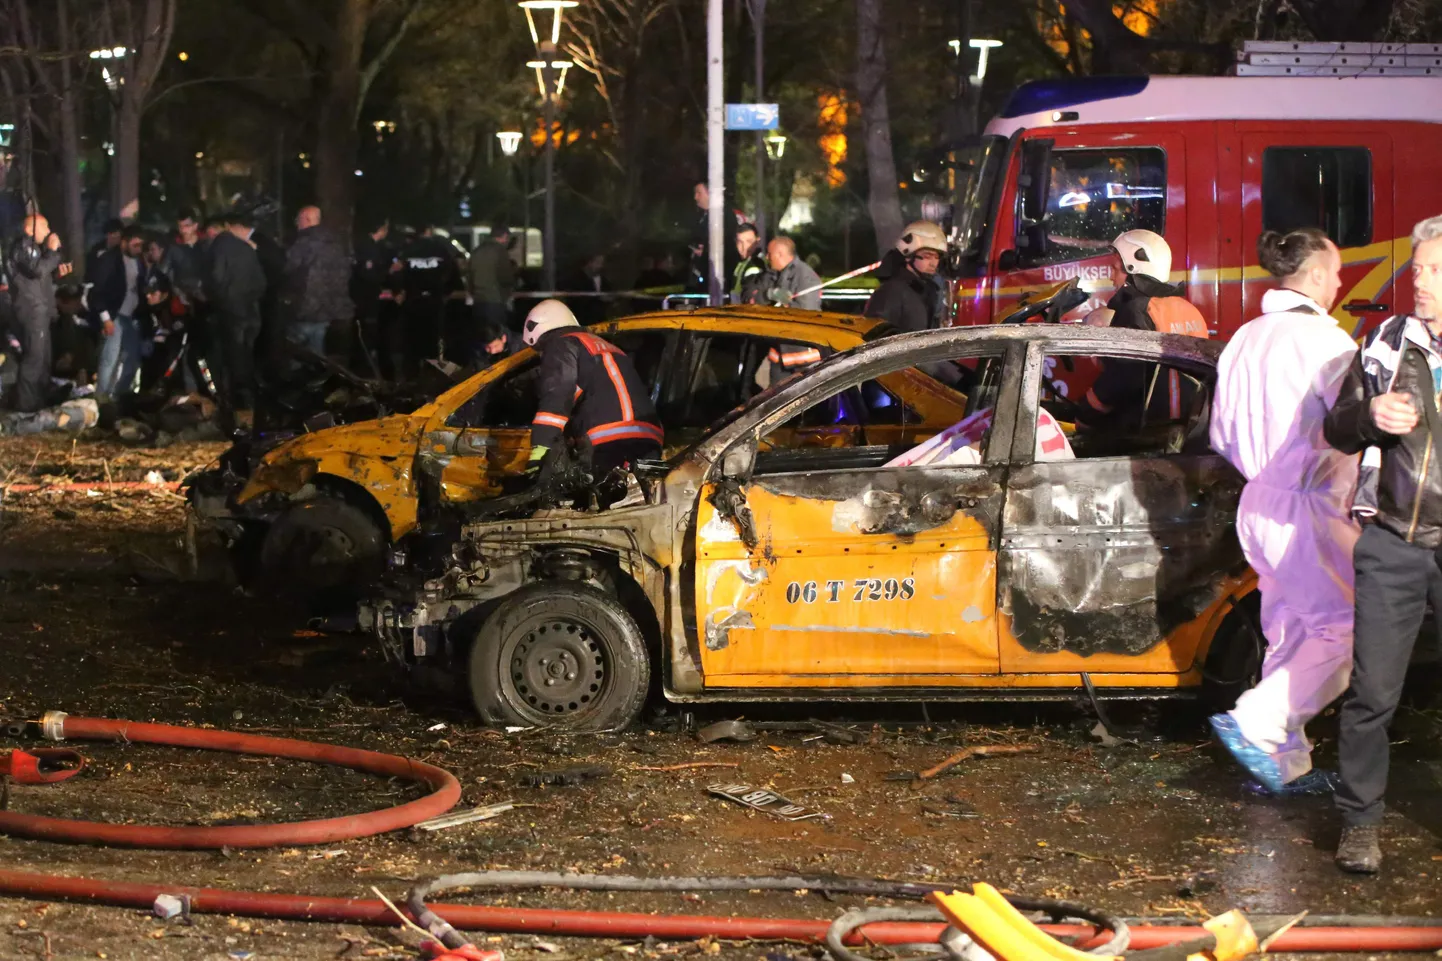 Ankaras sai plahvatuses mitu inimest surma ja paljud vigastada